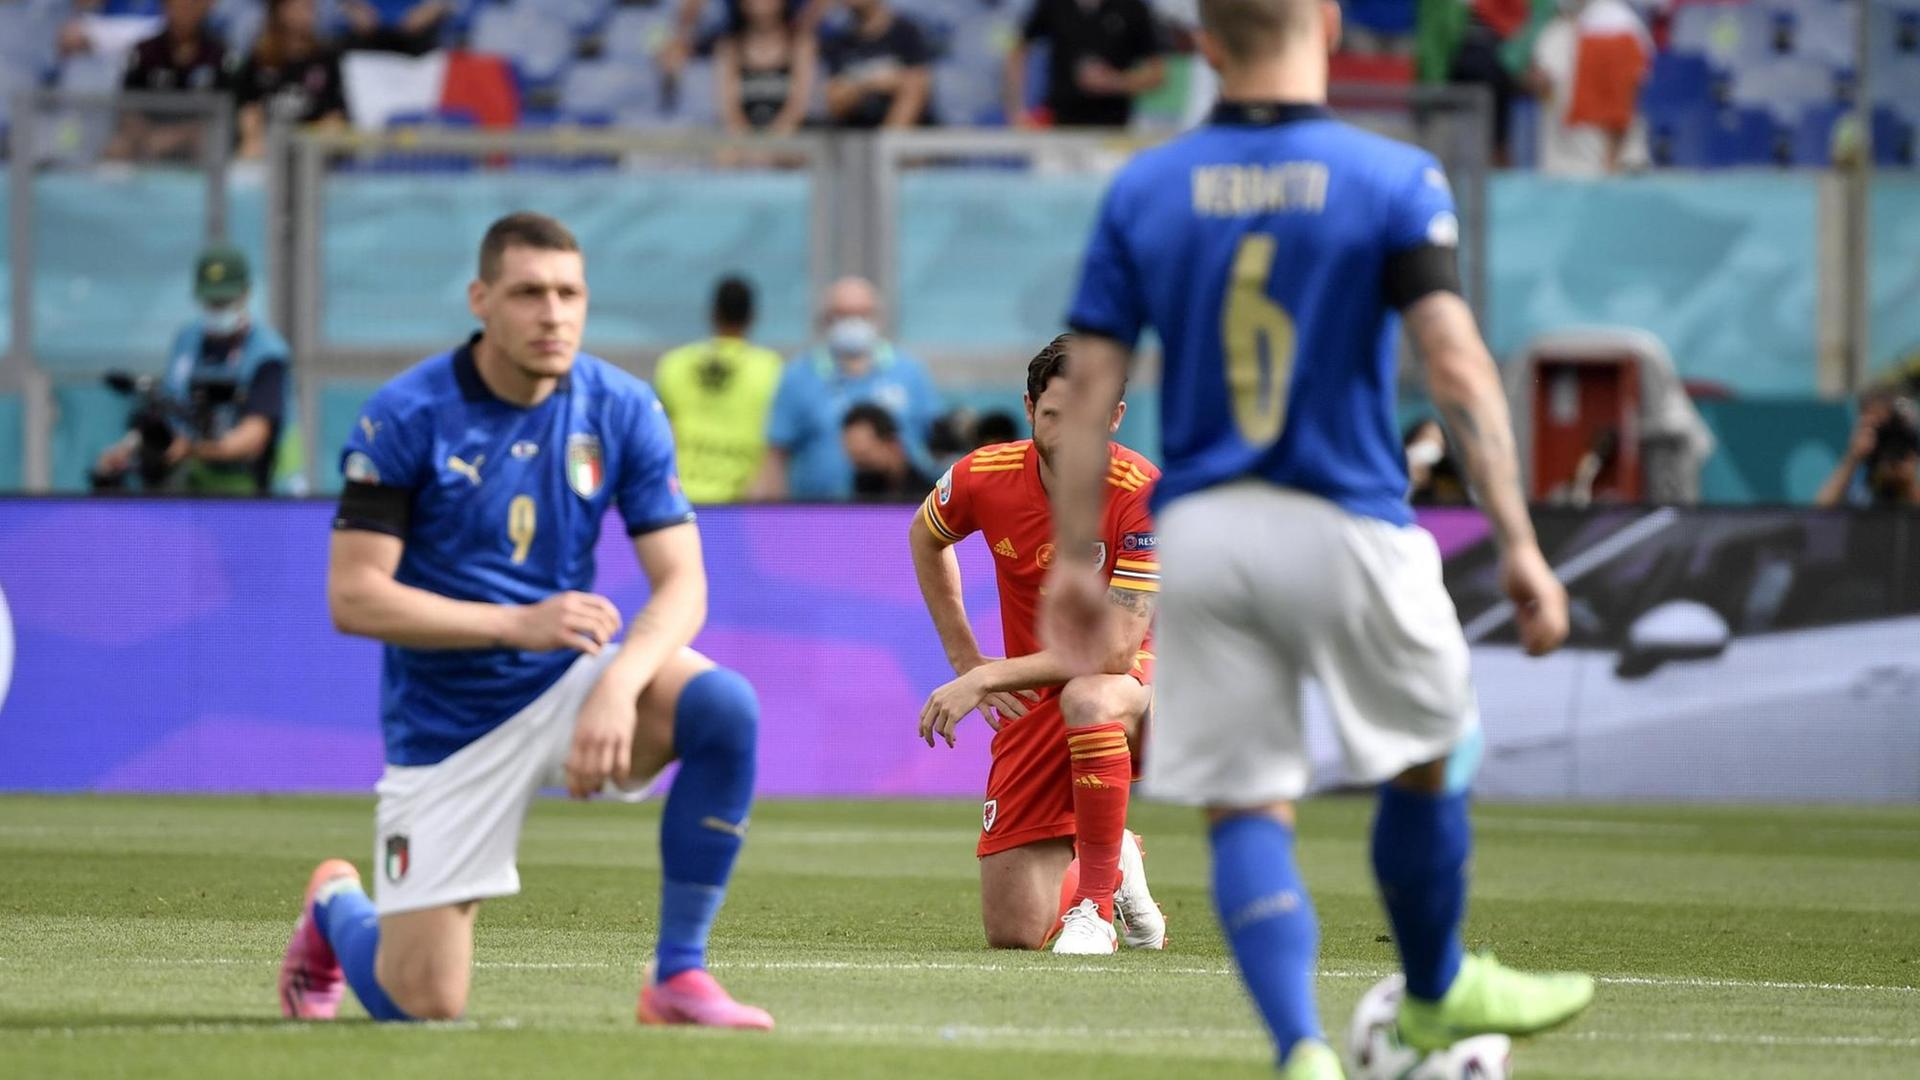 Der italienische Nationalspieler Andrea Belotti kniet nieder vor dem Spiel gegen Wales in Rom auf der Fußball-Europameisterschaft. Nicht alle seine Team-Kollegen tun es ihm gleich und setzen so ein Zeichen gegen Rassismus.